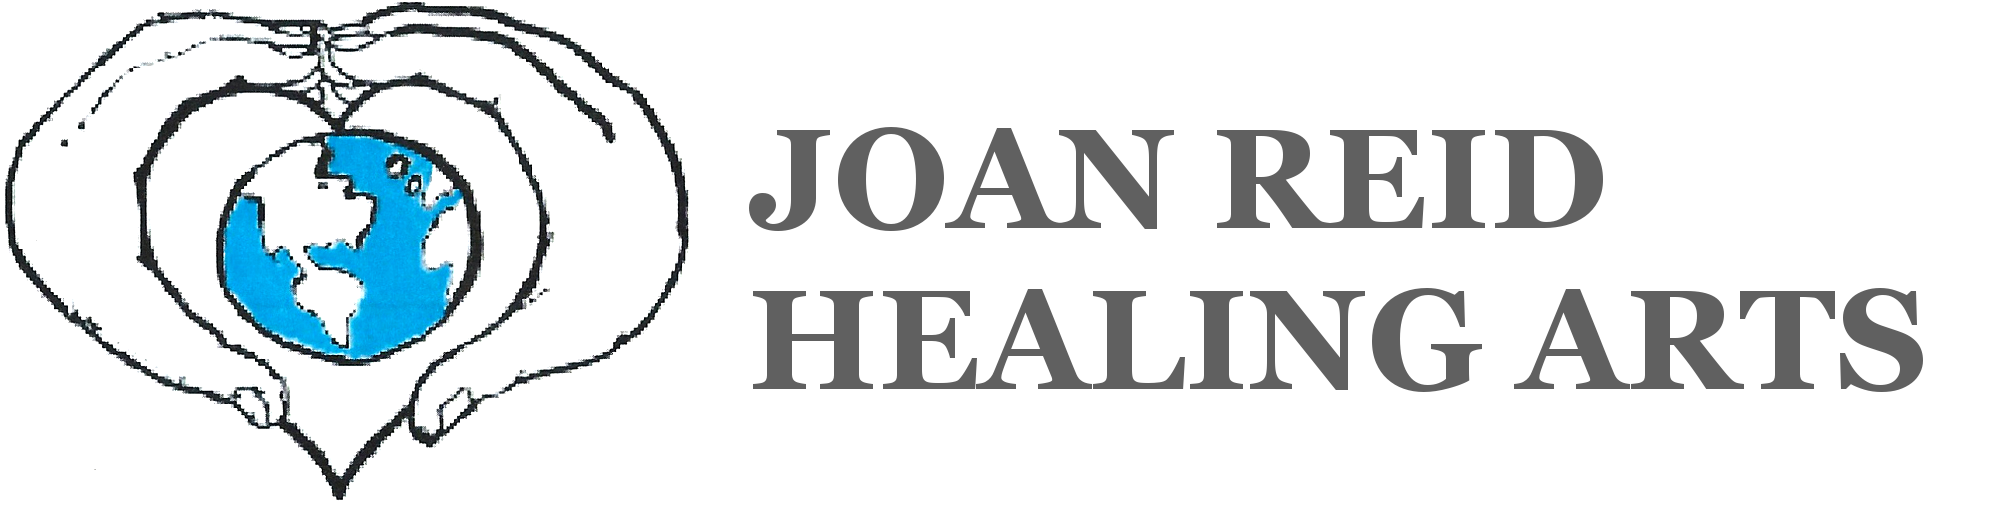 Joan Reid Healing Arts logo